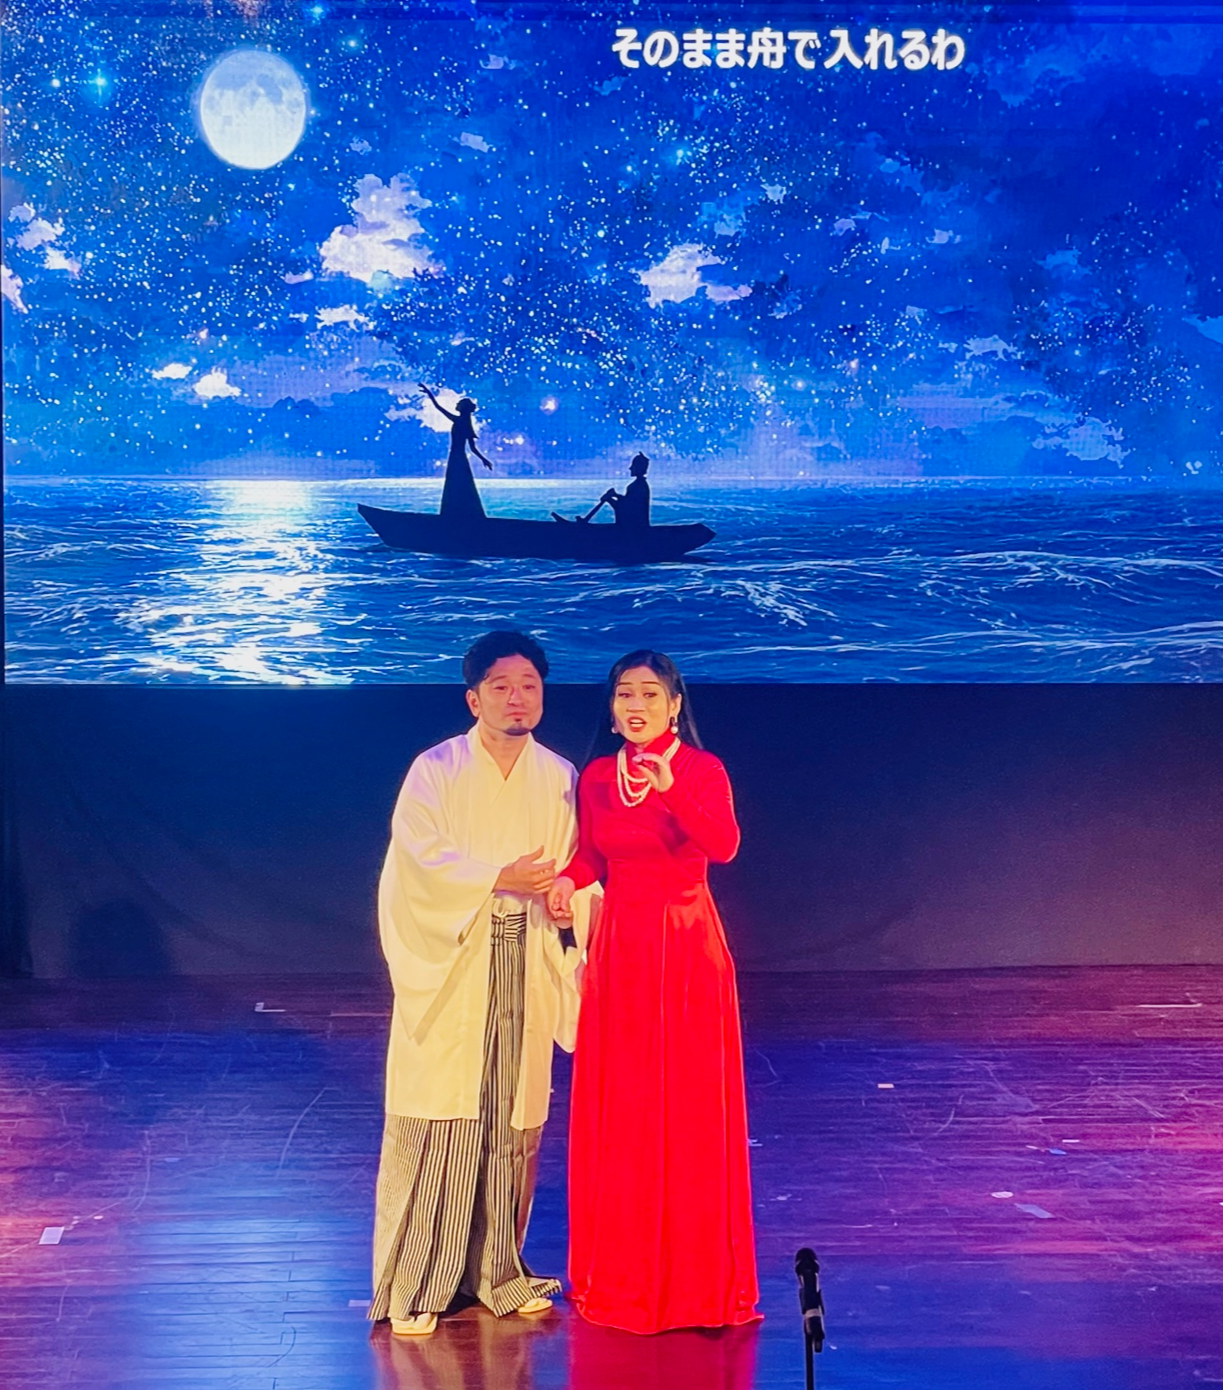 Vở Opera về chuyện tình có thật của công chúa Việt với thương nhân Nhật Bản thế kỷ 17 có gì đặc biệt? - Ảnh 1.